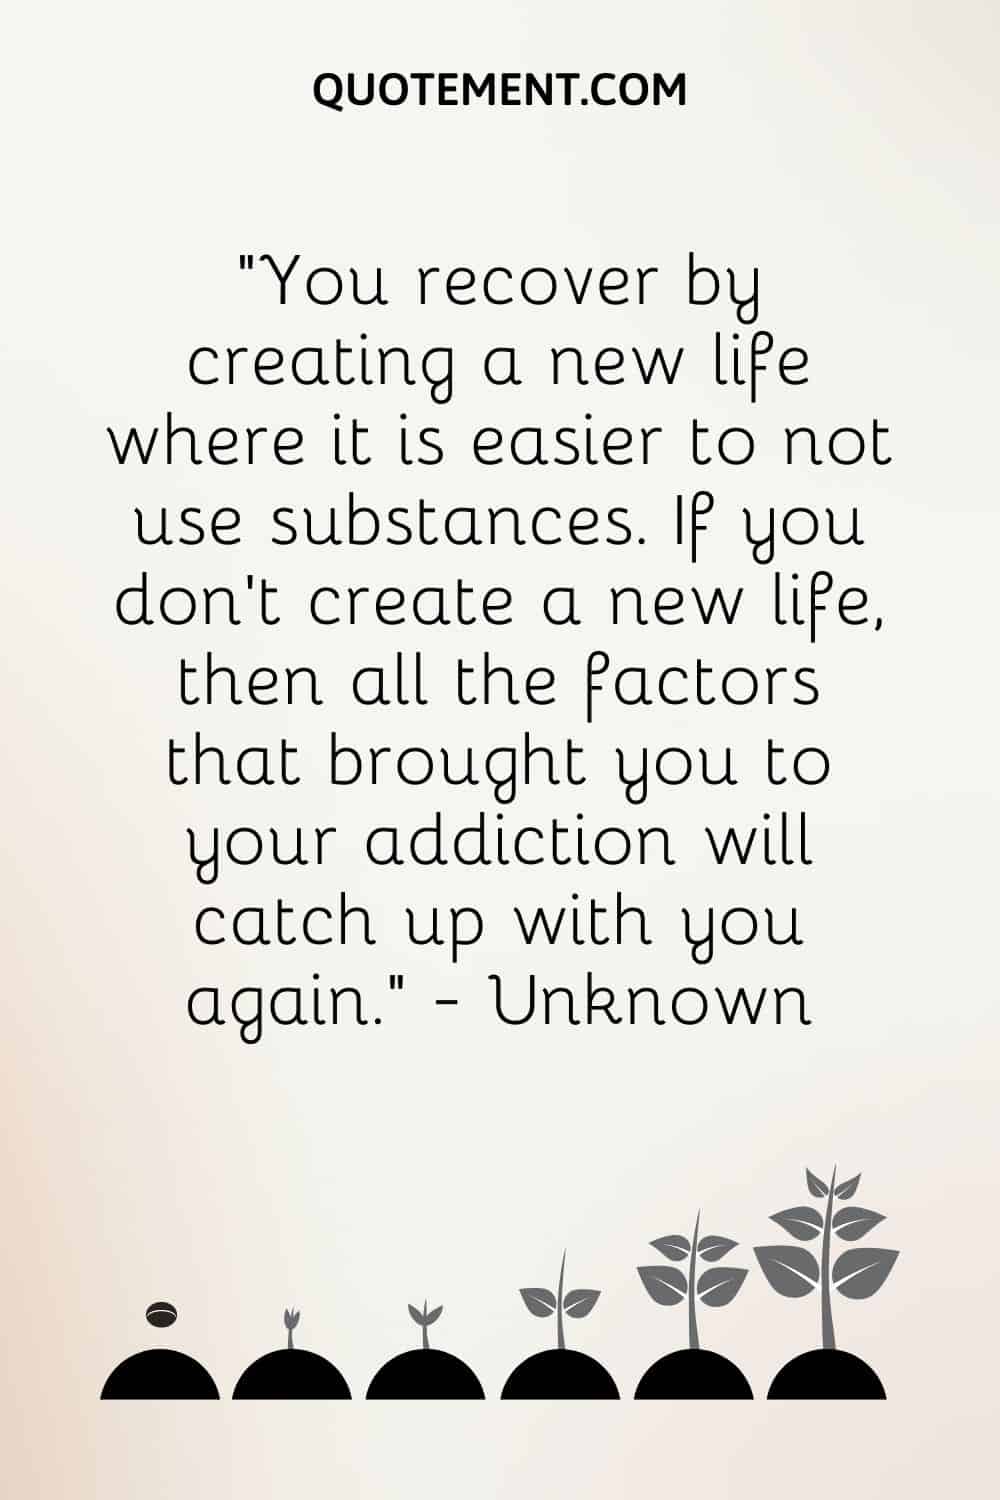 Te recuperas creando una nueva vida en la que es más fácil no consumir sustancias